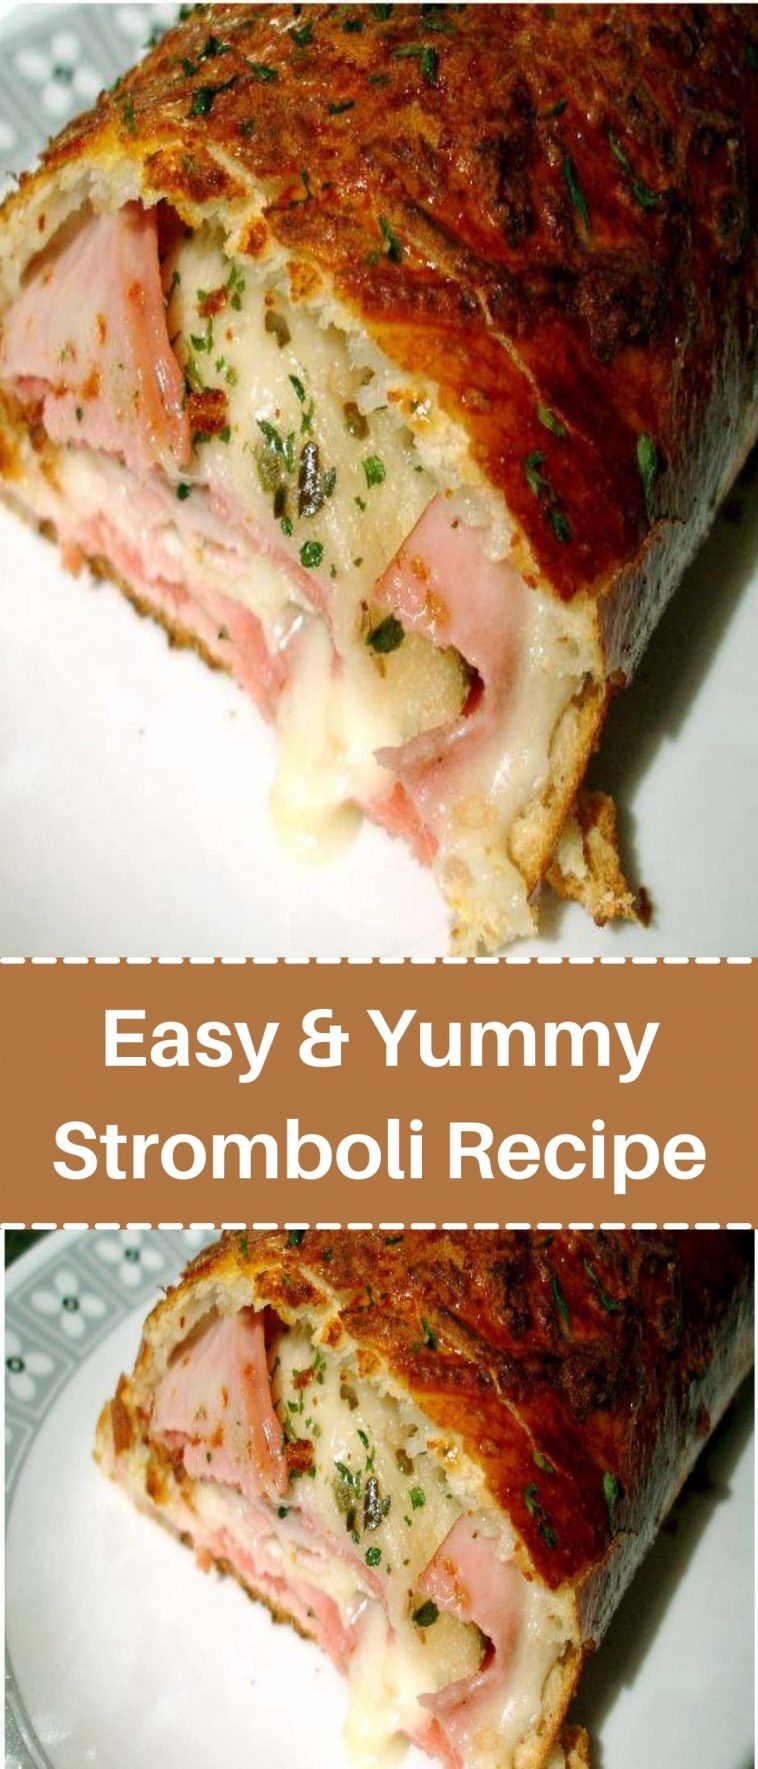 Easy & Yummy Stromboli Recipe